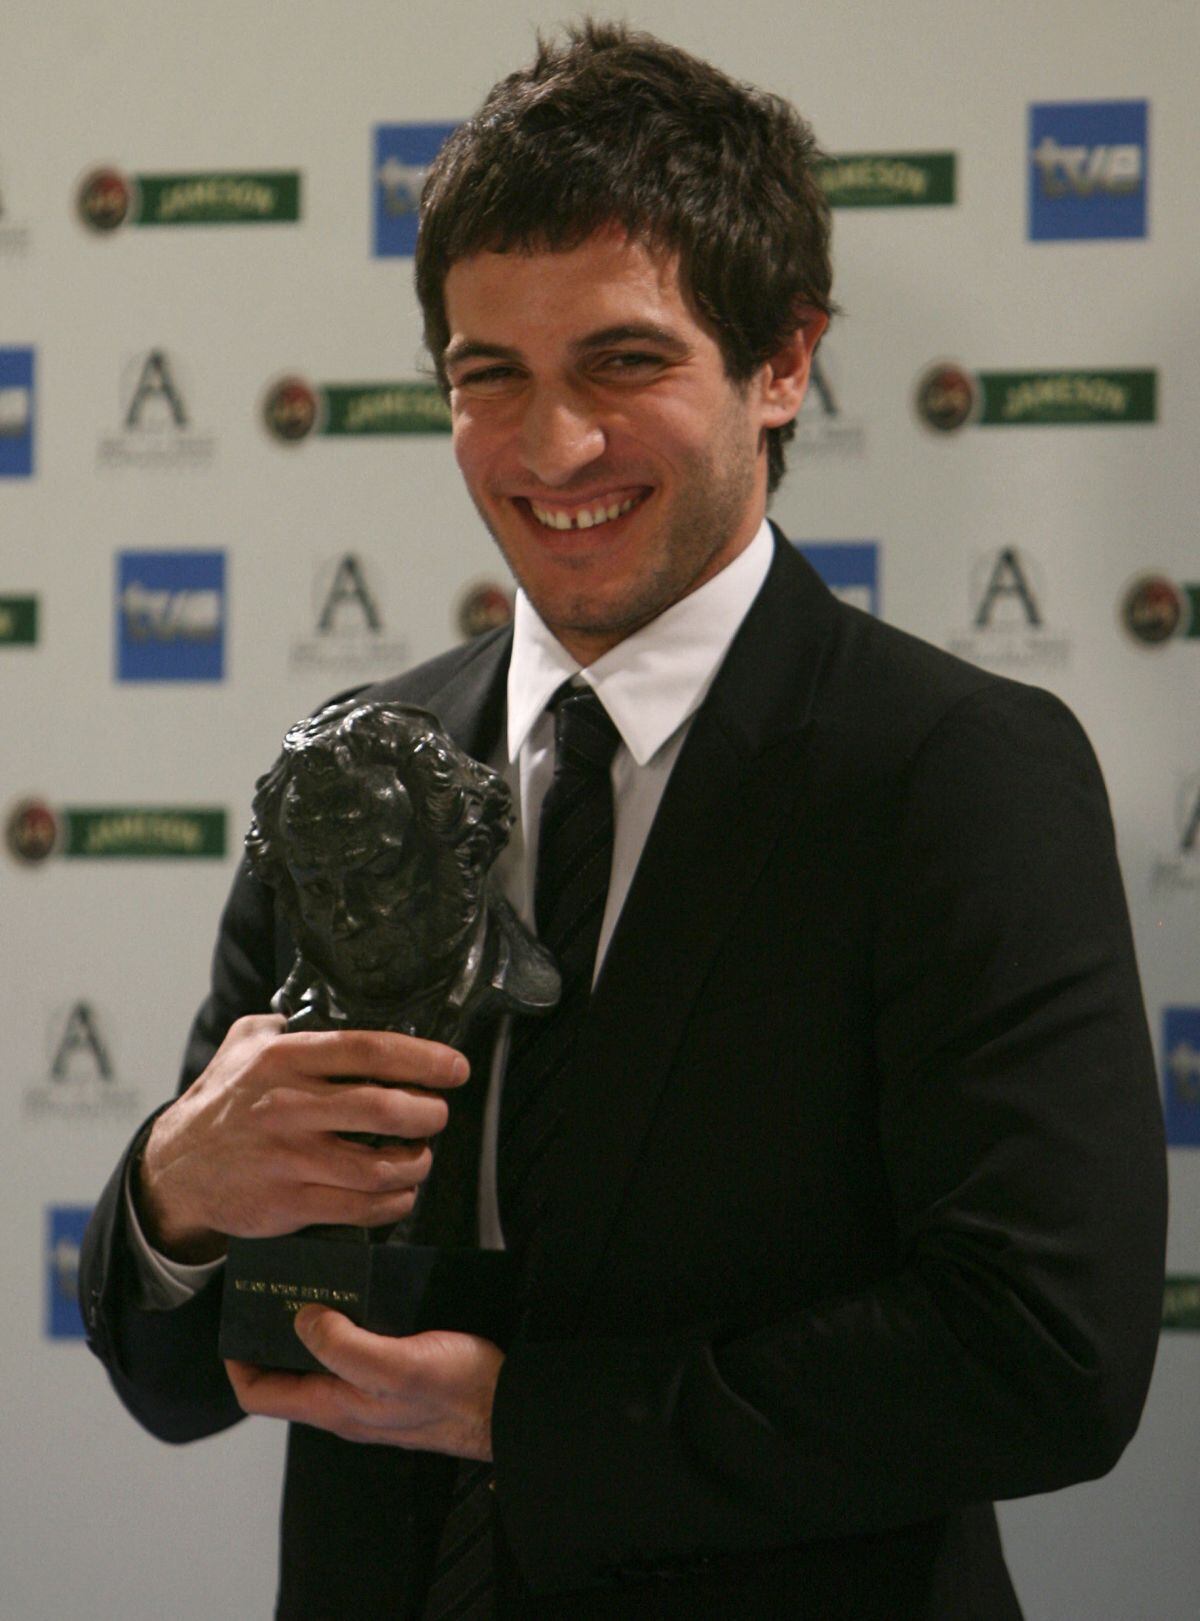 Quim Gutiérrez sonríe con su premio tras ser elegido mejor actor revelación por su papel en 'AzulOscuroCasiNegro' en los premios Goya en Madrid, el 28 de enero de 2007 (Foto: Pierre-Philippe Marcou / AFP)